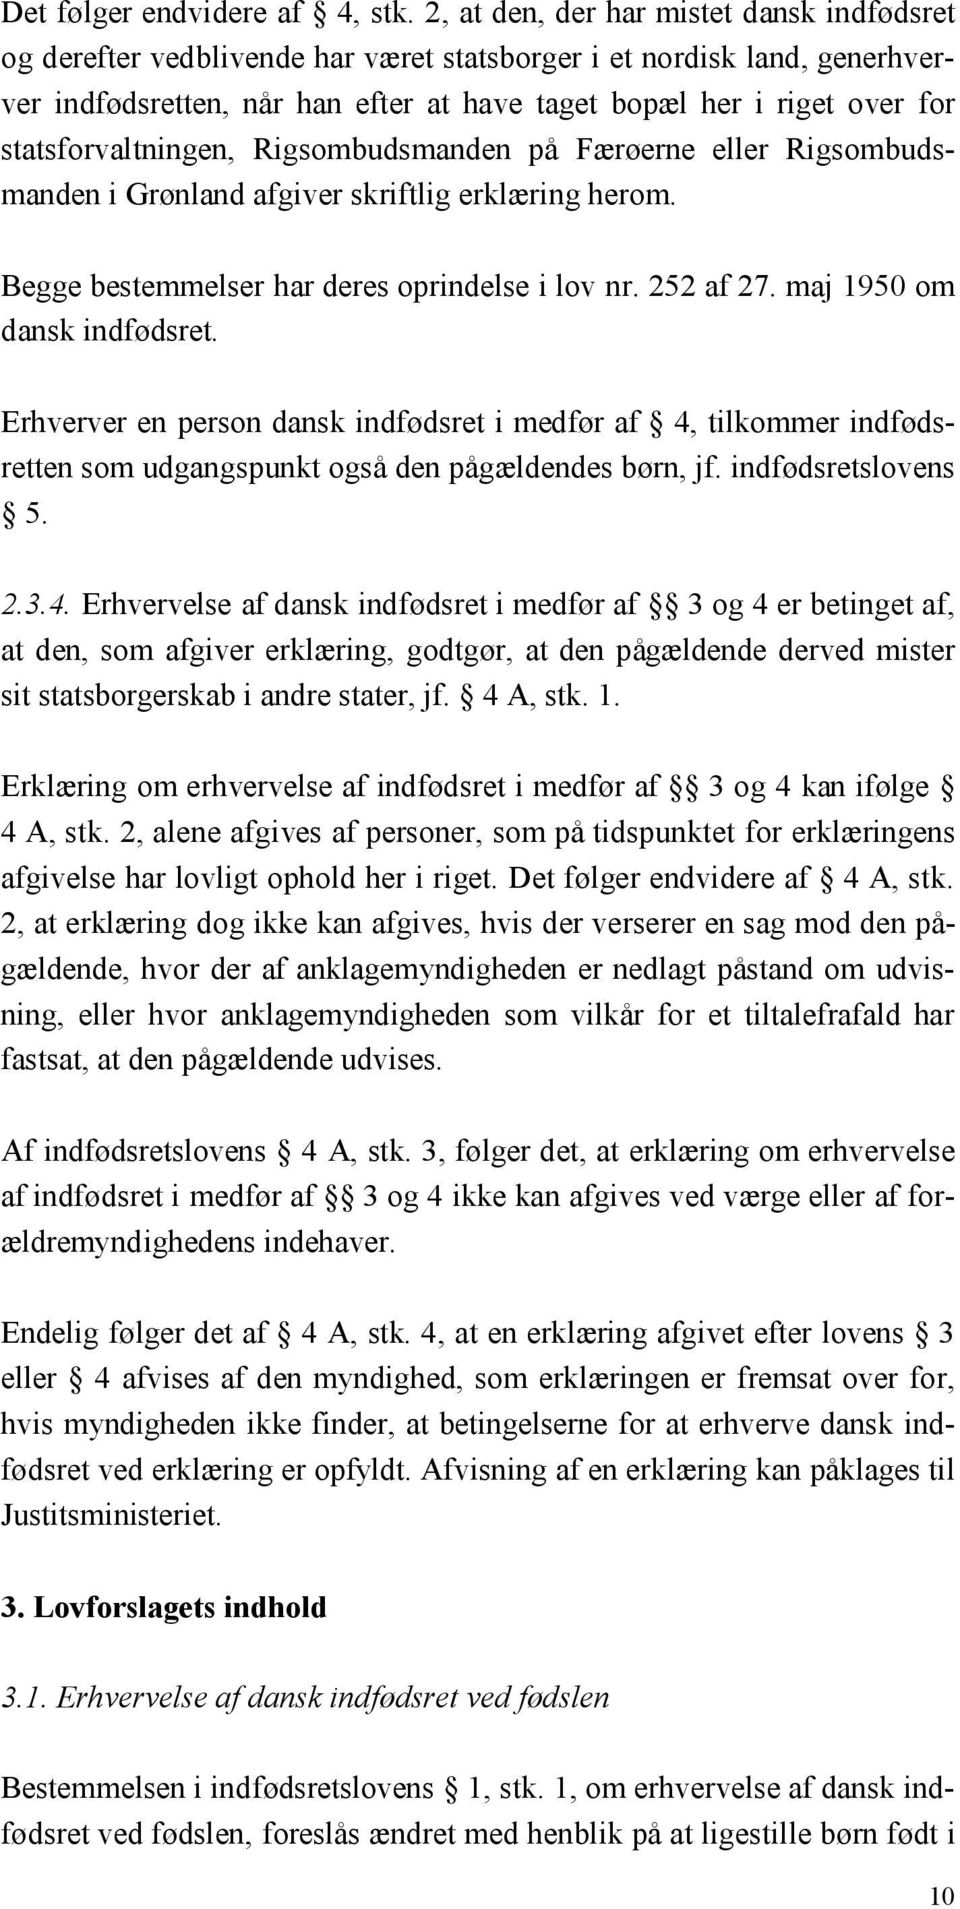 statsforvaltningen, Rigsombudsmanden på Færøerne eller Rigsombudsmanden i Grønland afgiver skriftlig erklæring herom. Begge bestemmelser har deres oprindelse i lov nr. 252 af 27.